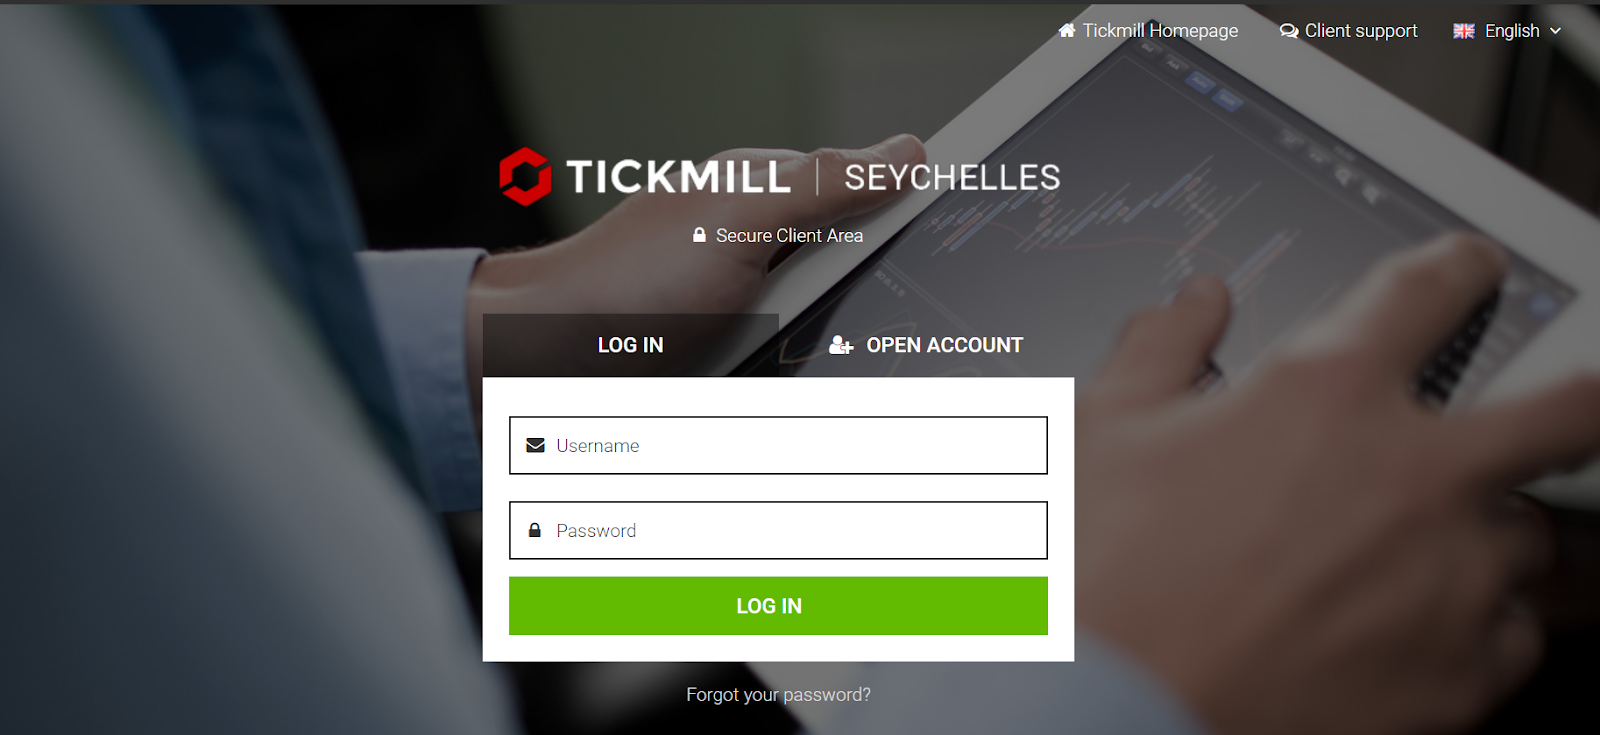 مراجعة Tickmill - فتح الحساب و تسجل الدخول